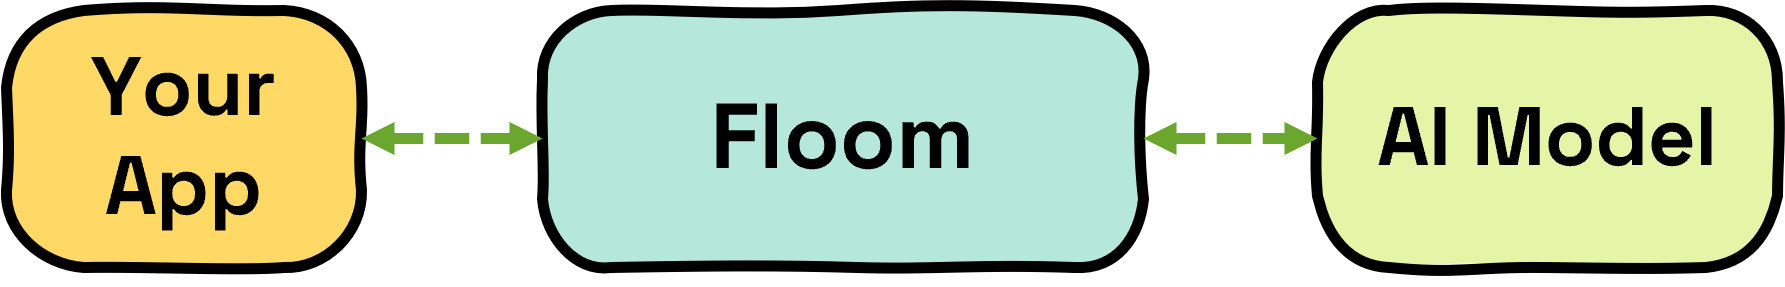 Basic Floom Architecture